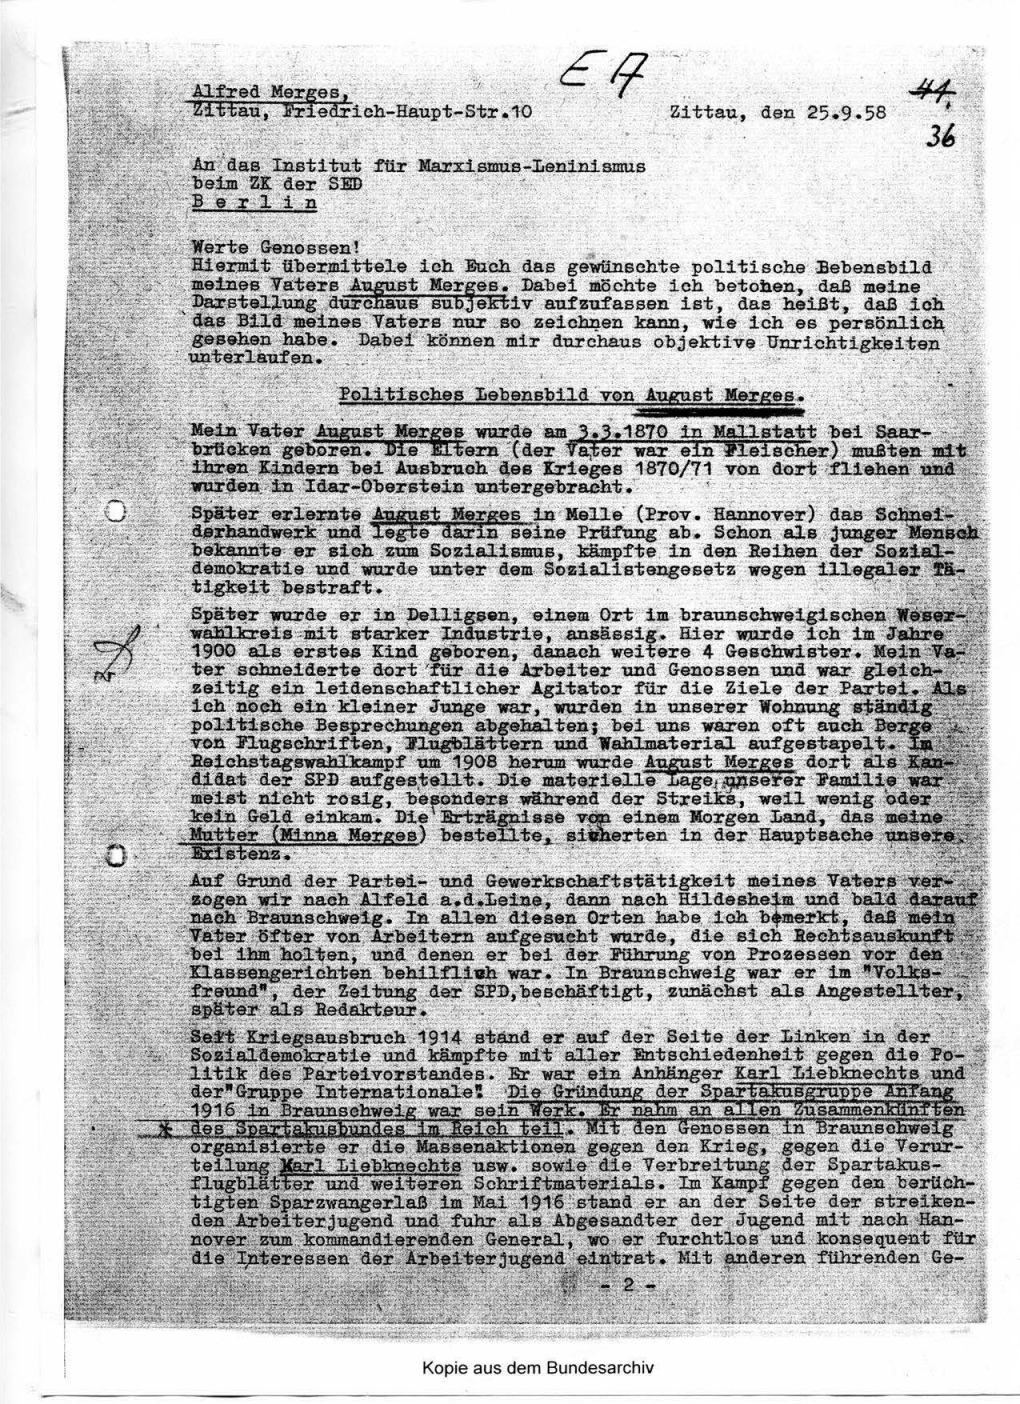 Kopie Aus Dem Bundesarchiv -7- Nossen Braunschweigs Wurde Er Während Des Krieges Mehrfach Verhaftet Und Eillgesperrt